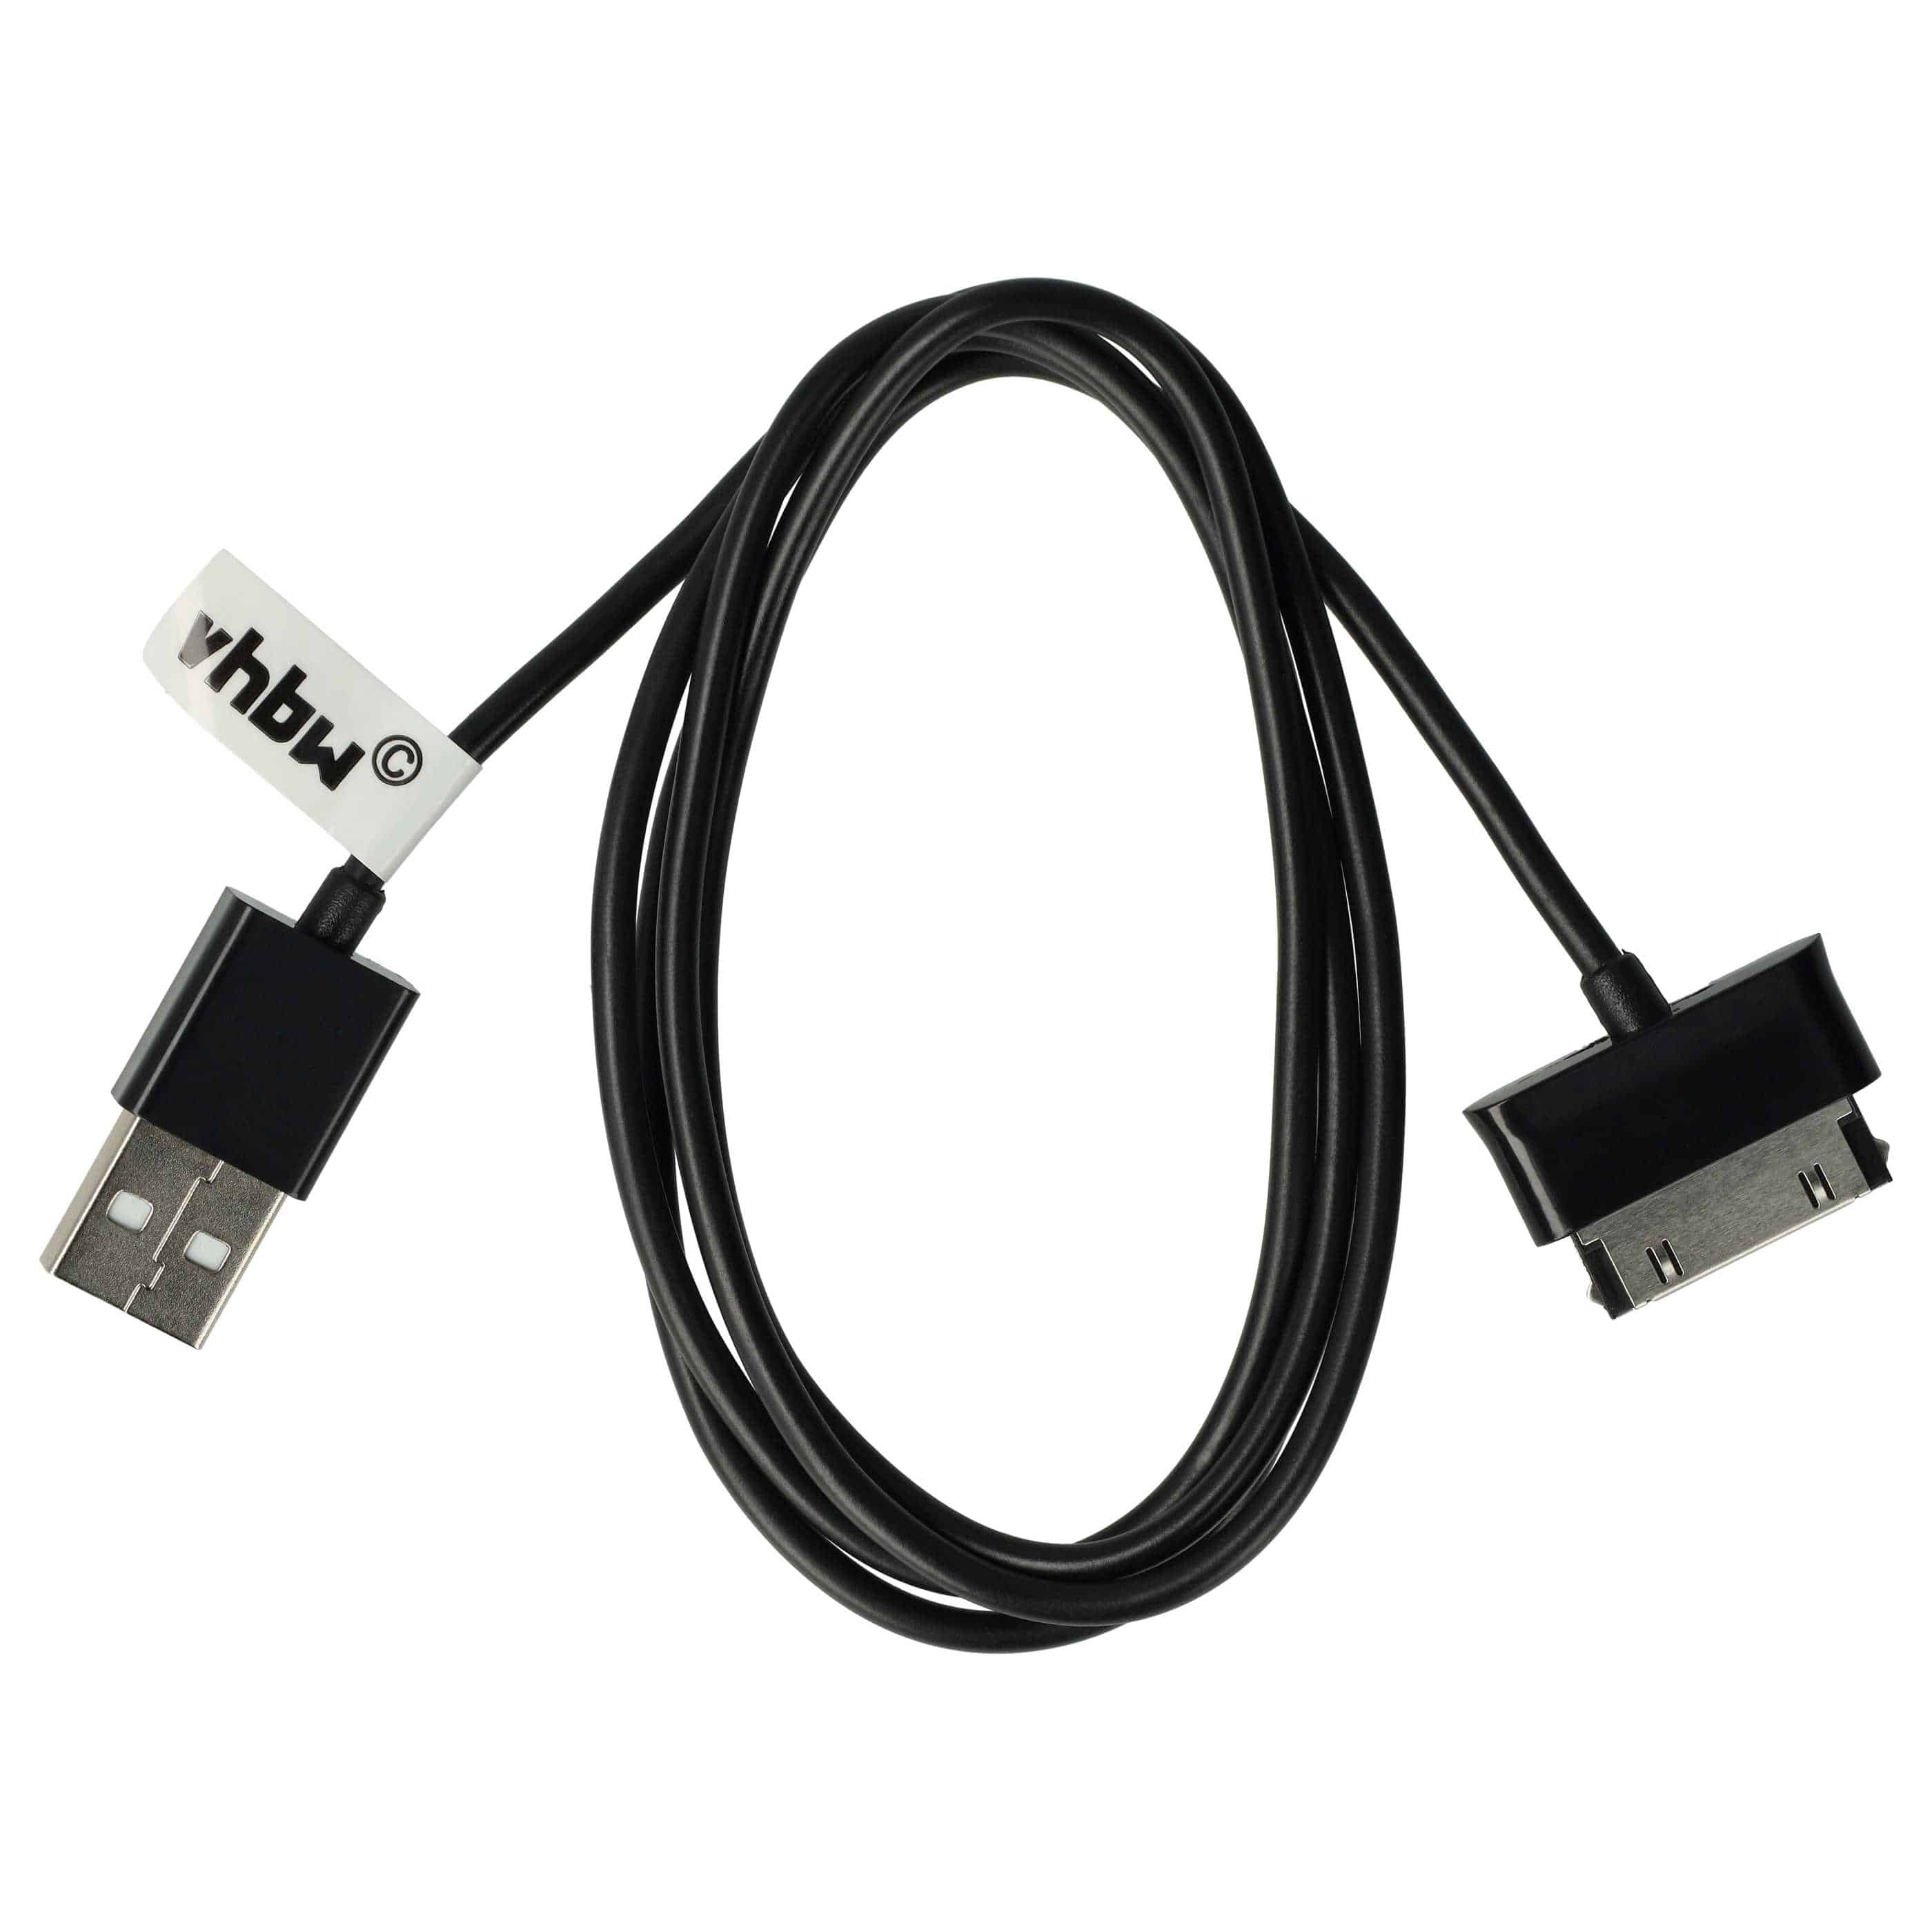 USB Datenkabel als Ersatz für Samsung ECC1DPU für Samsung Tablet - 2in1 Ladekabel - 120cm